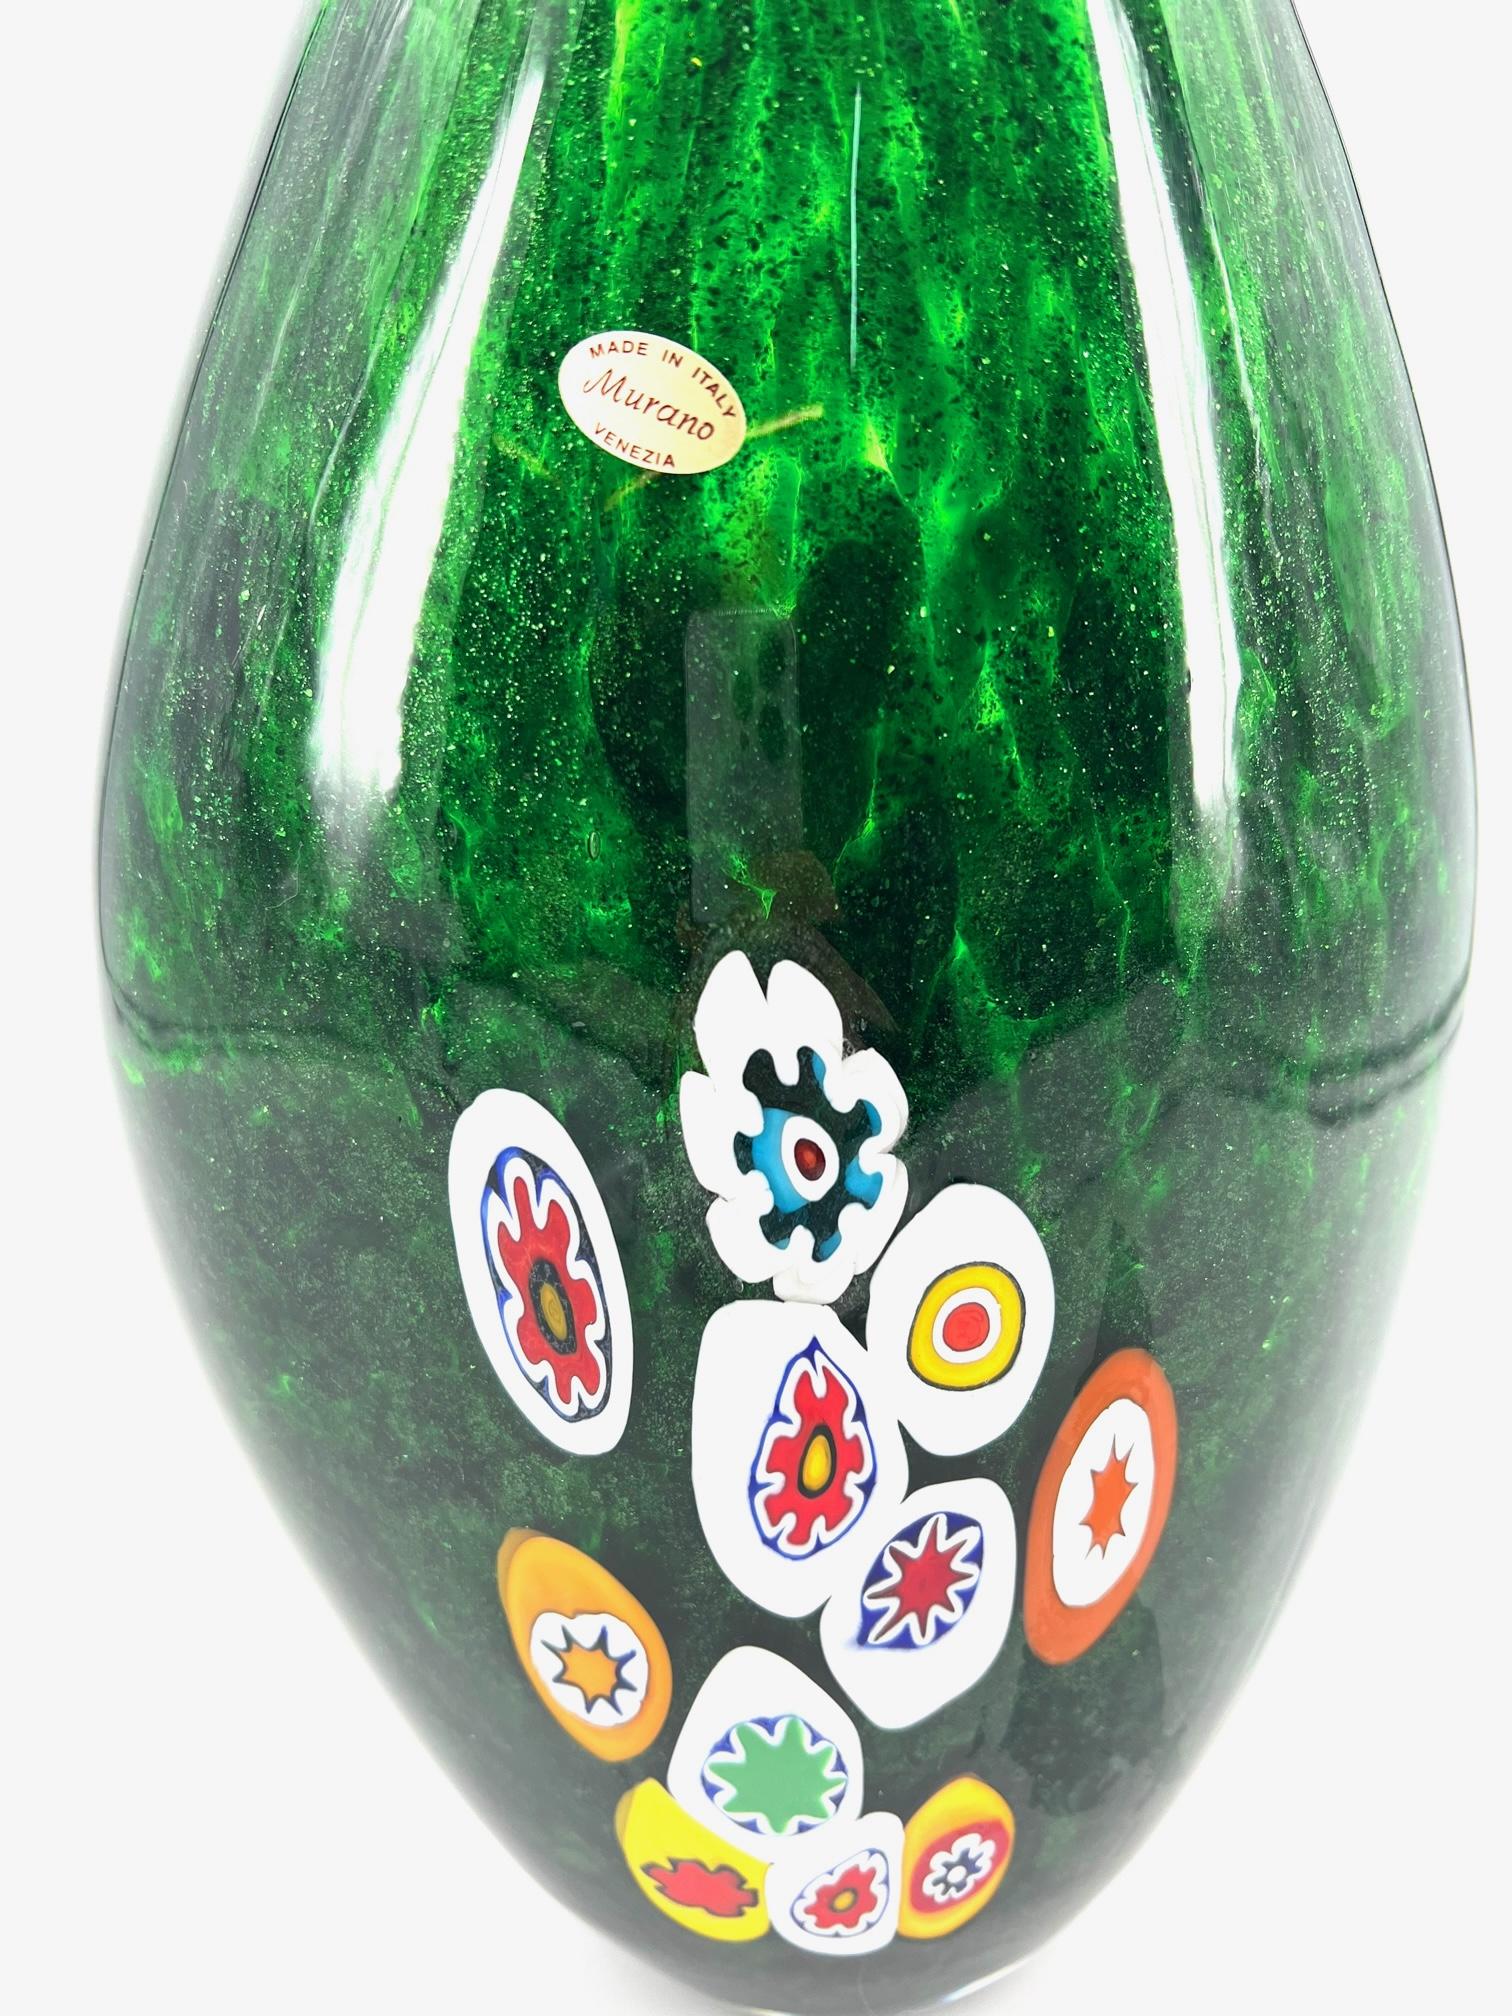 Art Glass 1295 Murano Hand made Green Avventurina Murrine Vase For Sale